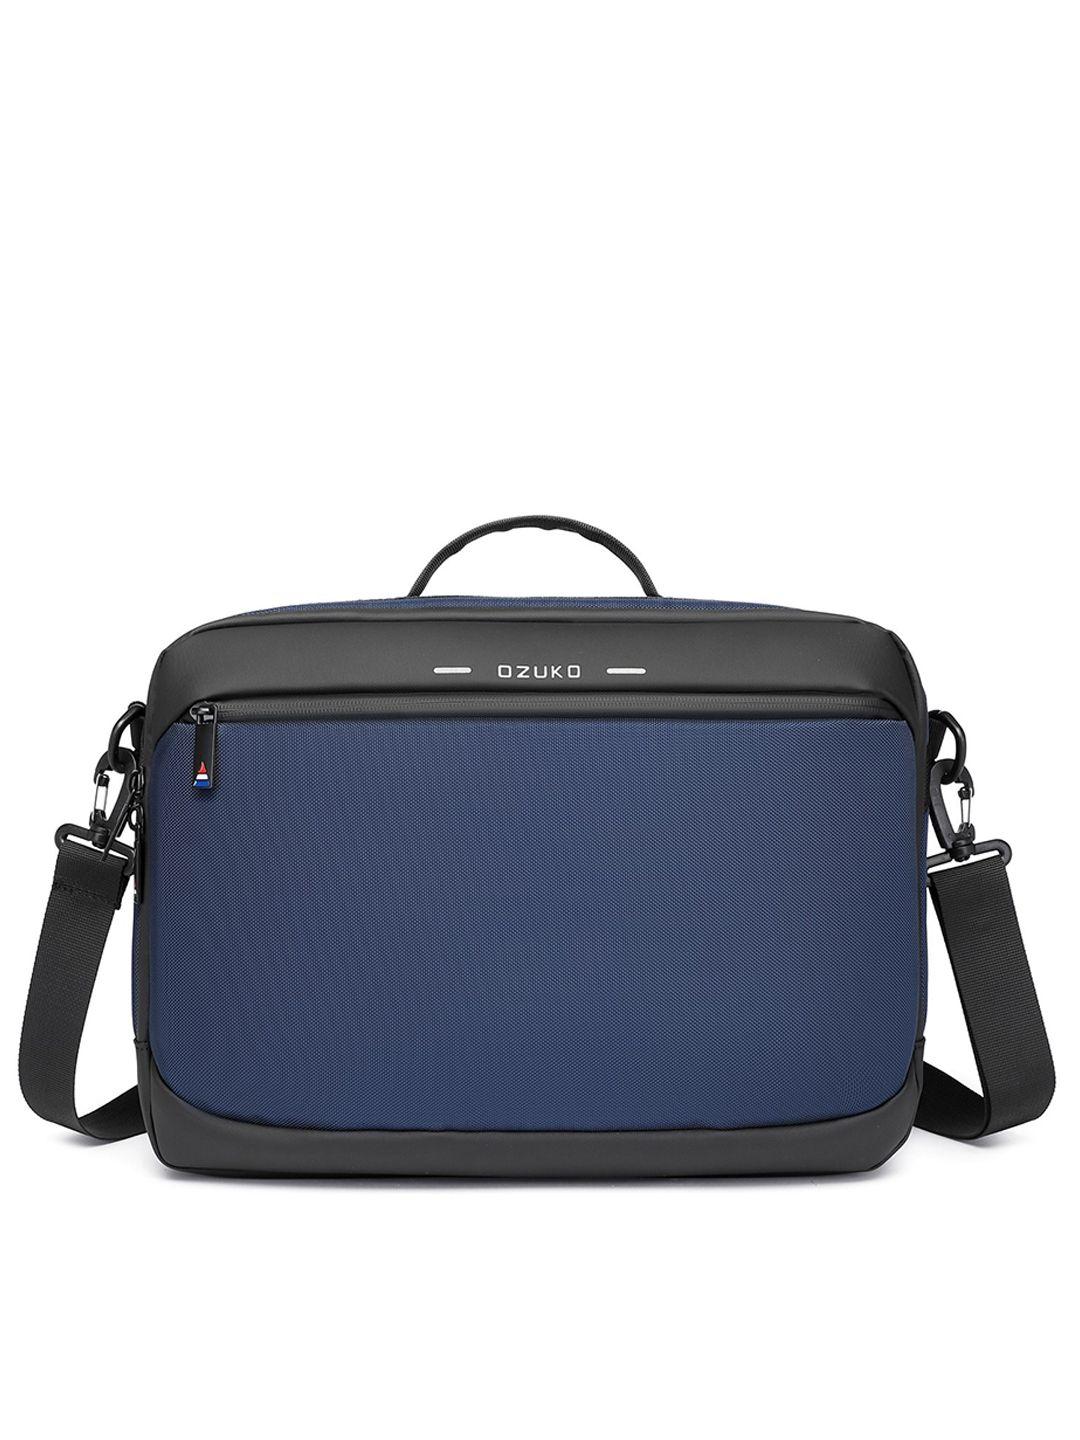 ozuko 9423 blue soft one size satchel bag